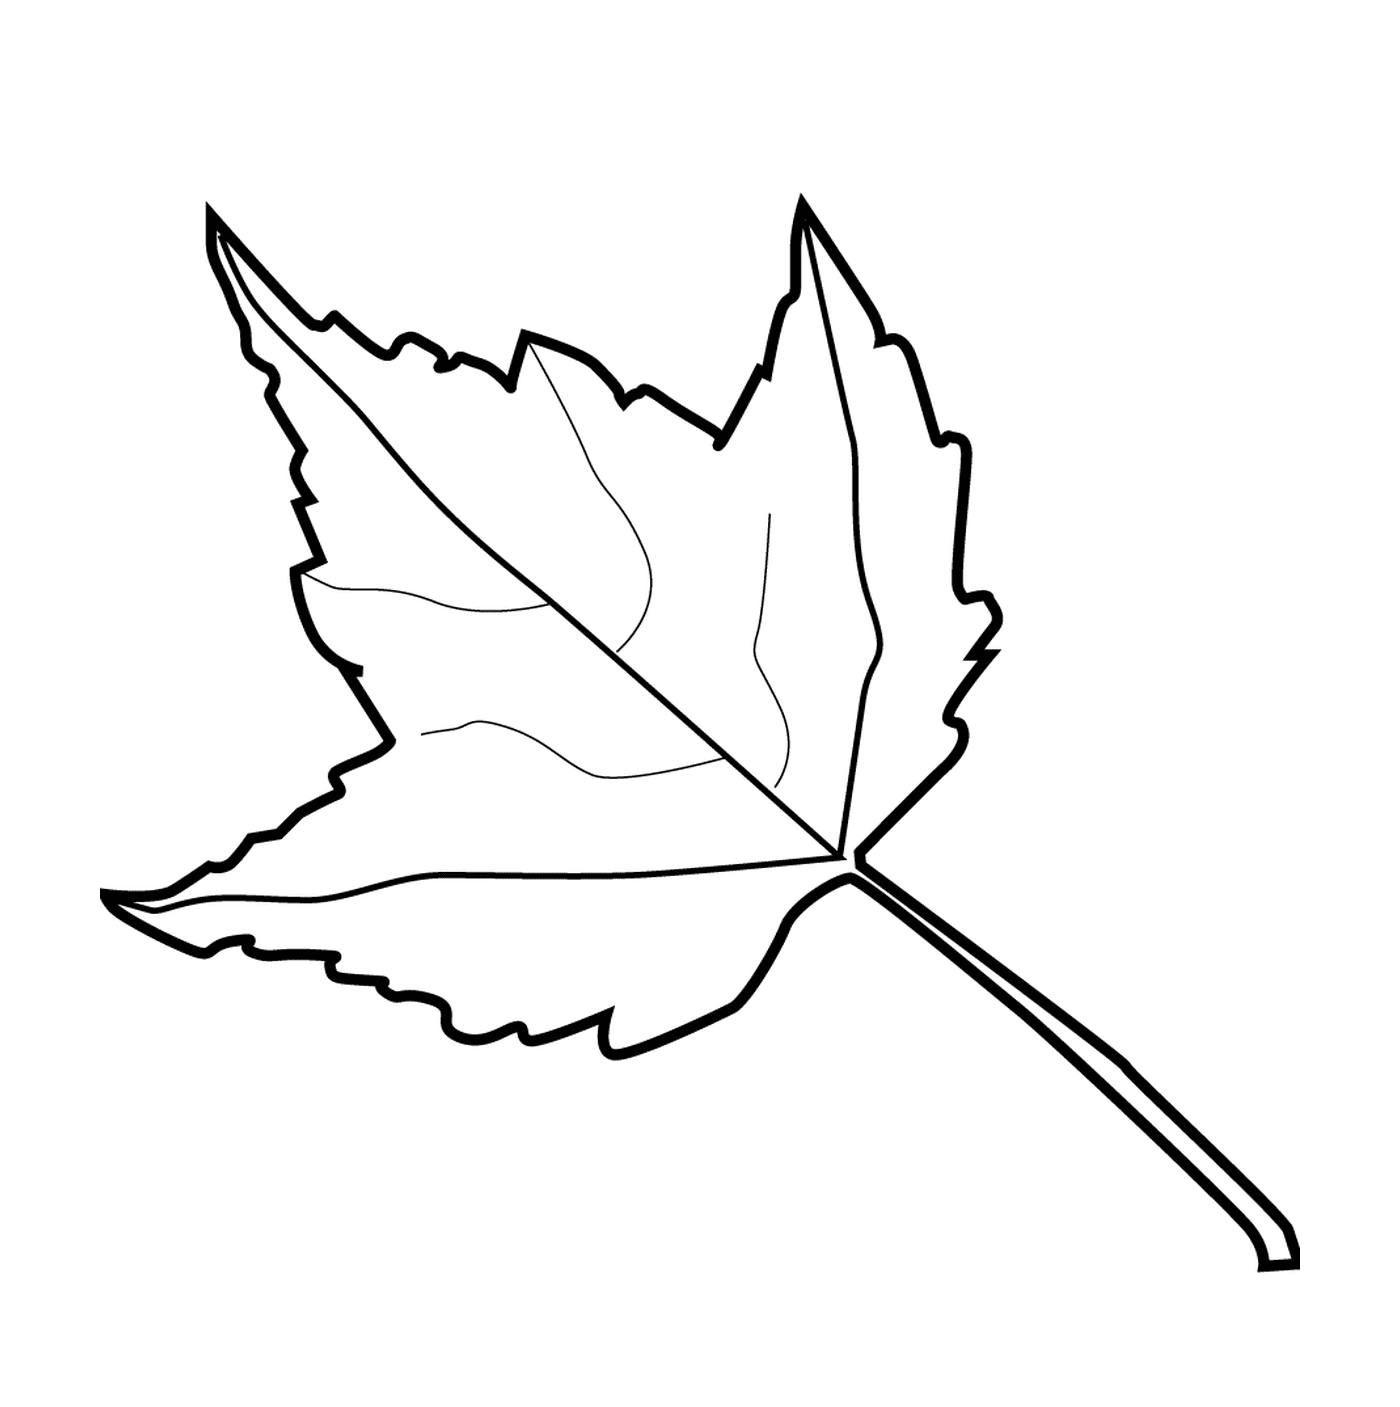  A maple leaf 